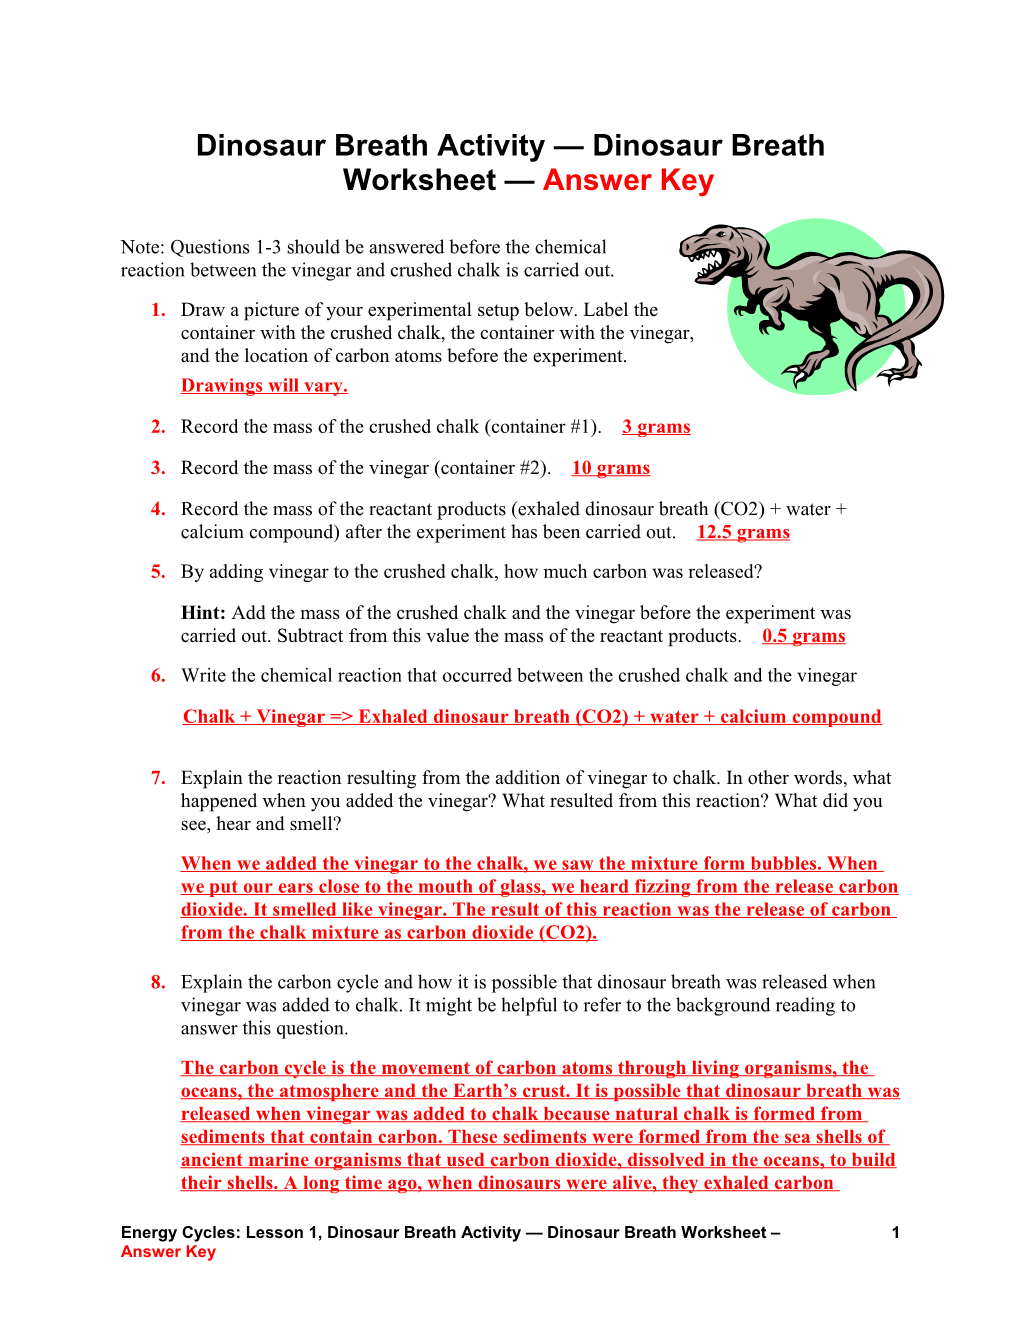 Dinosaur Breath Worksheet